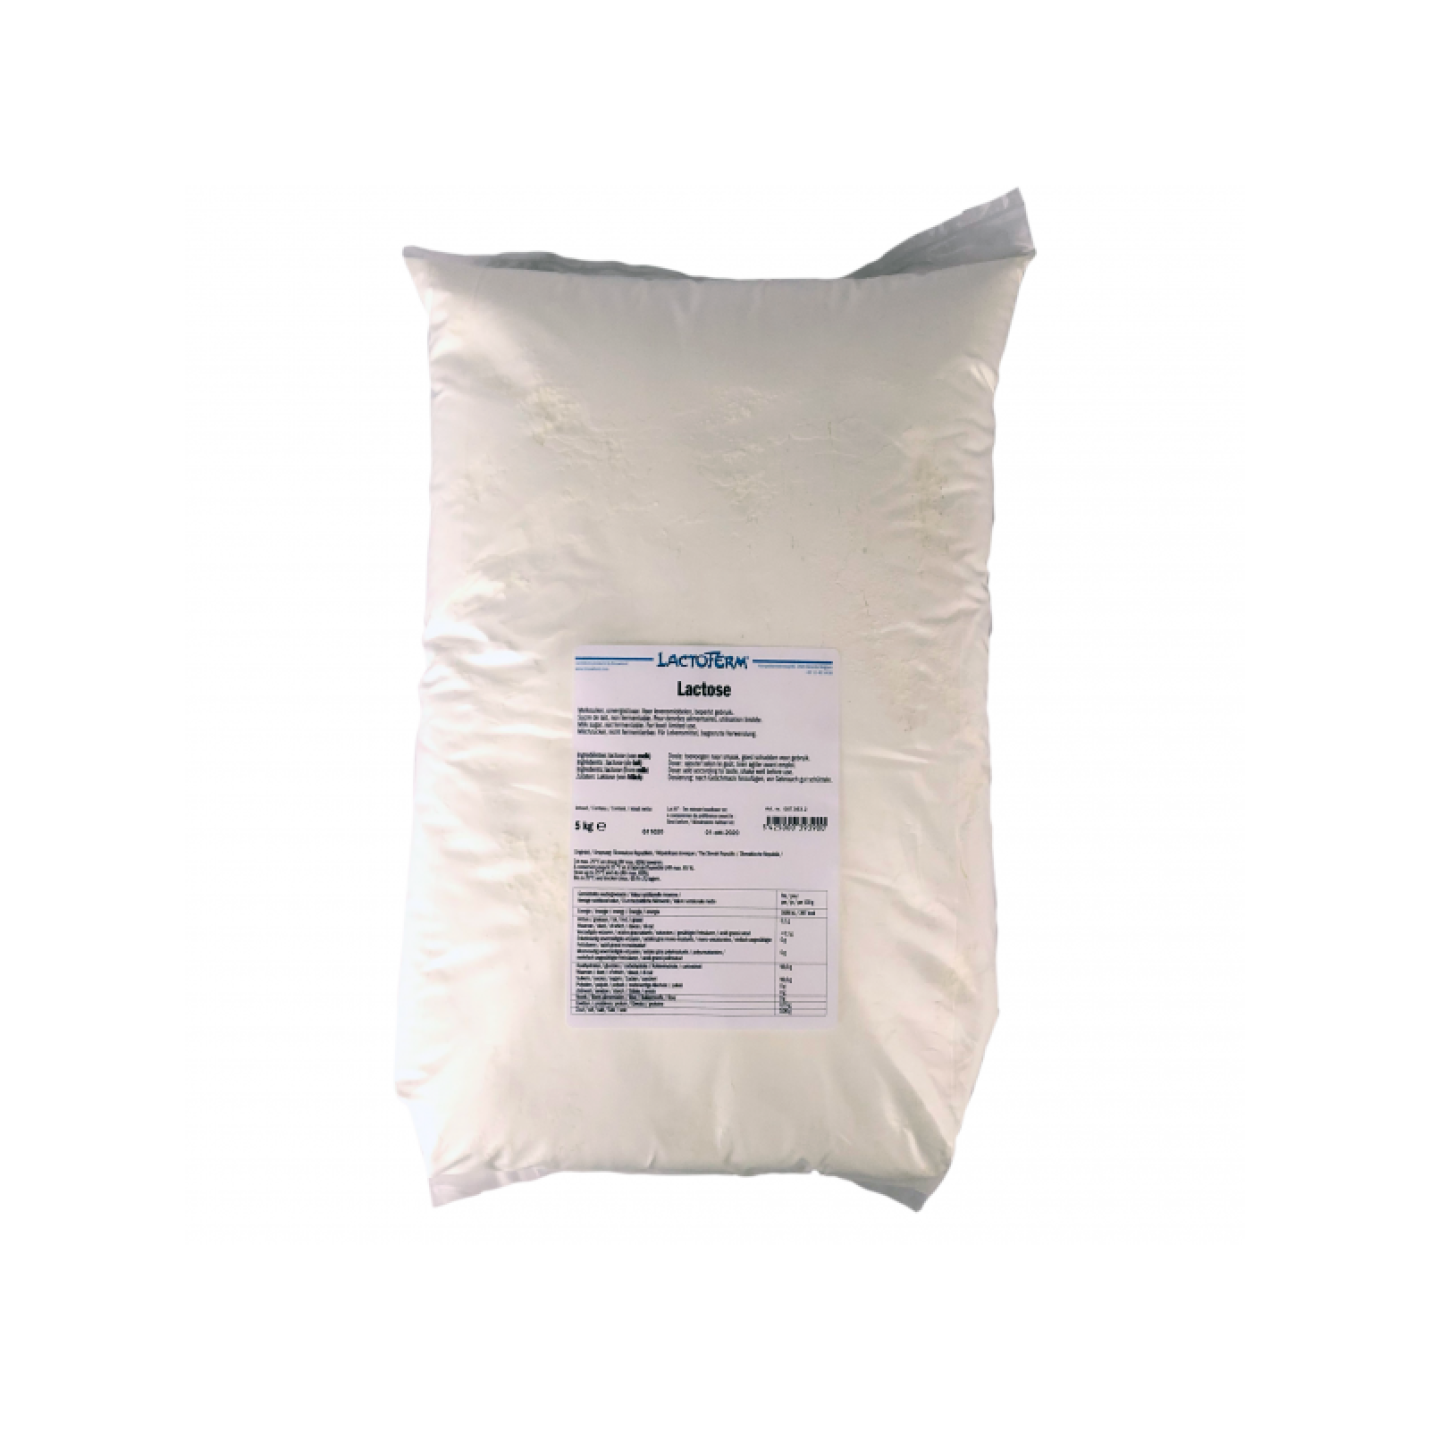 Lactose (melksuiker) Vinoferm 5 Kg tht 1-11-24